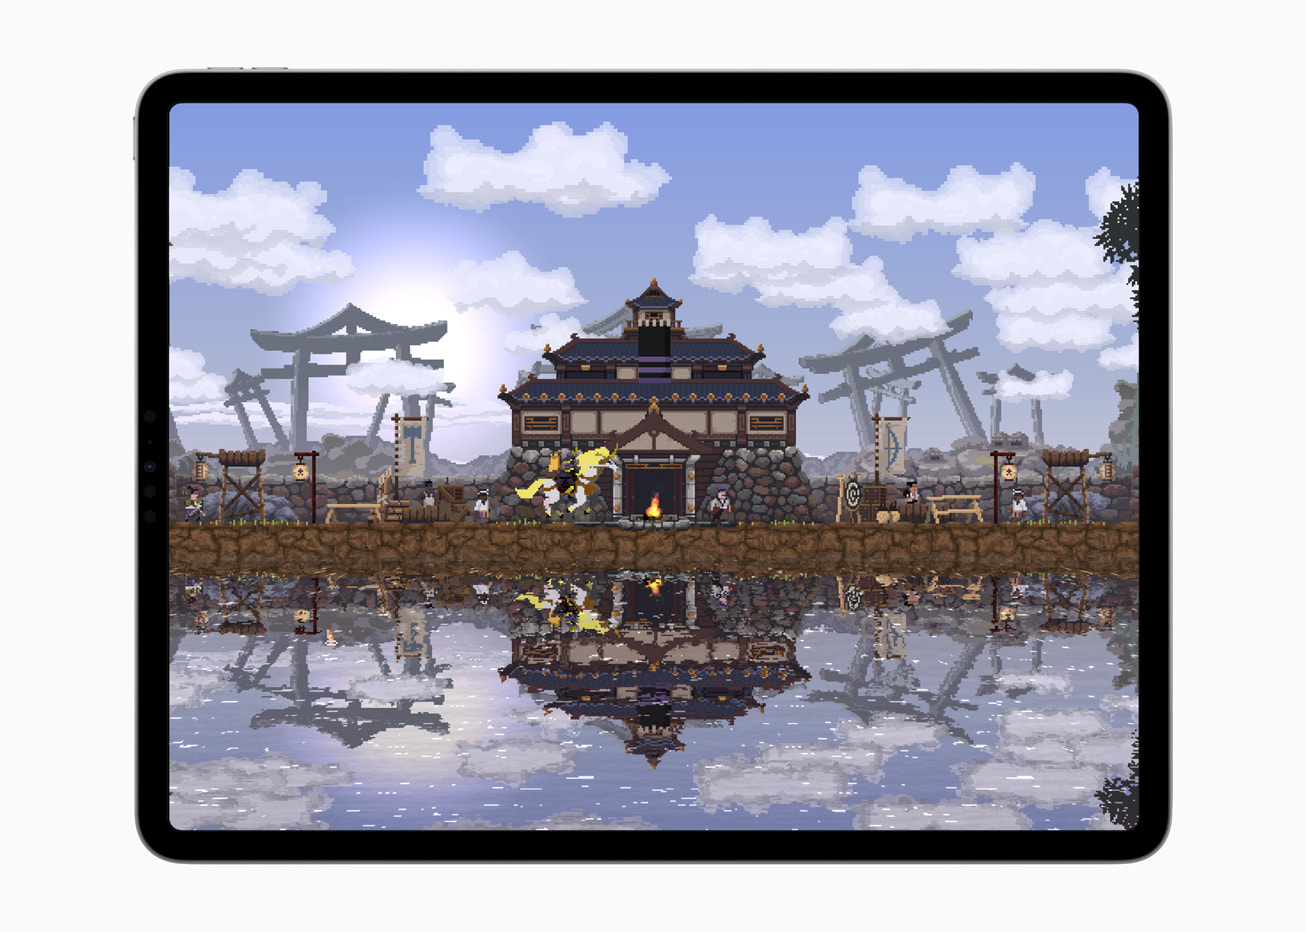 Auf iPad Pro zeigt ein Still aus dem Spiel Kingdom Two Crowns ein Haus neben einem Gewässer